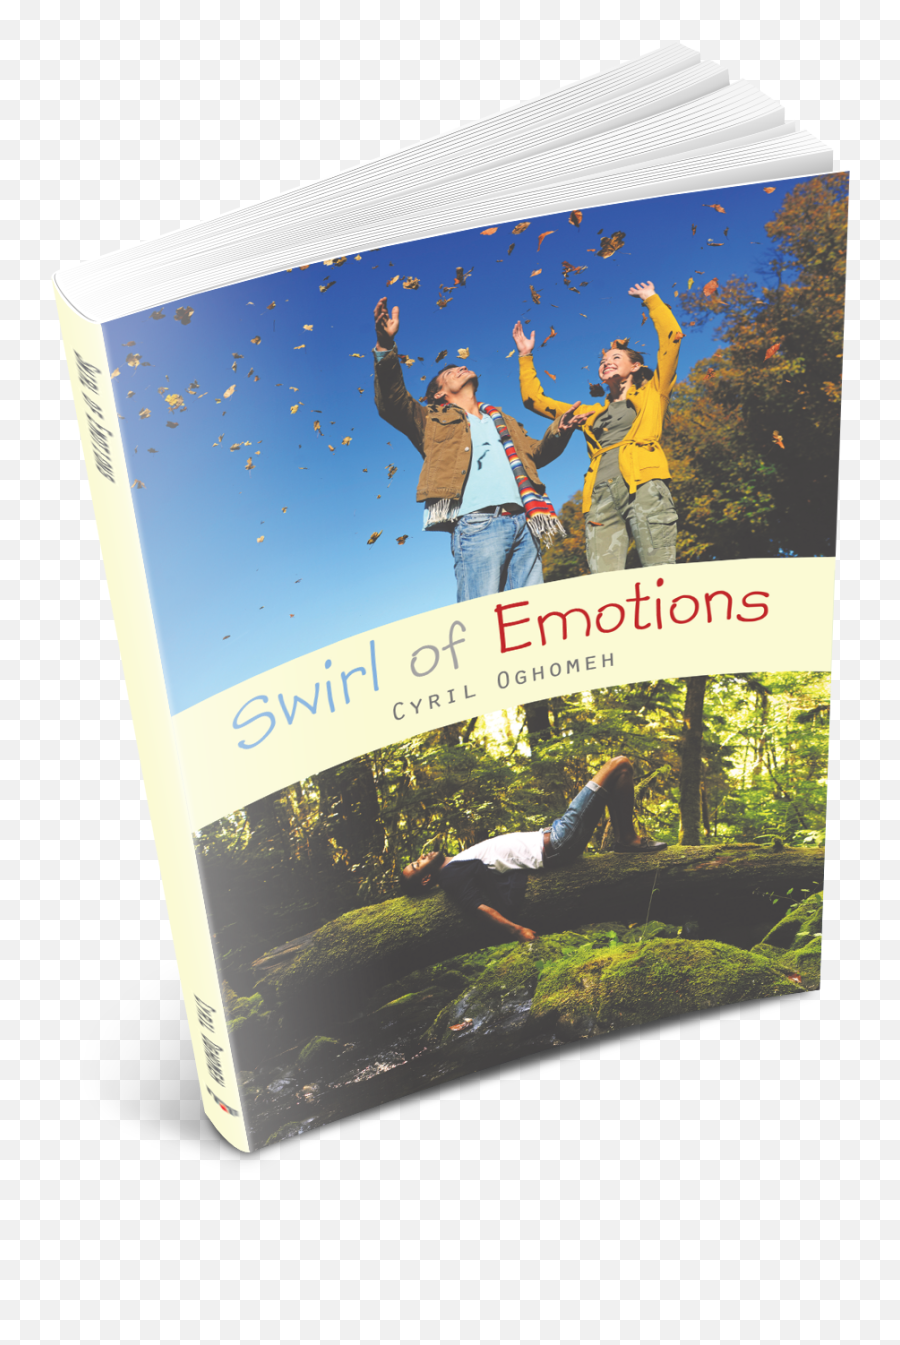 Swirl Of Emotions - Leisure Emoji,Poetry On Emotions